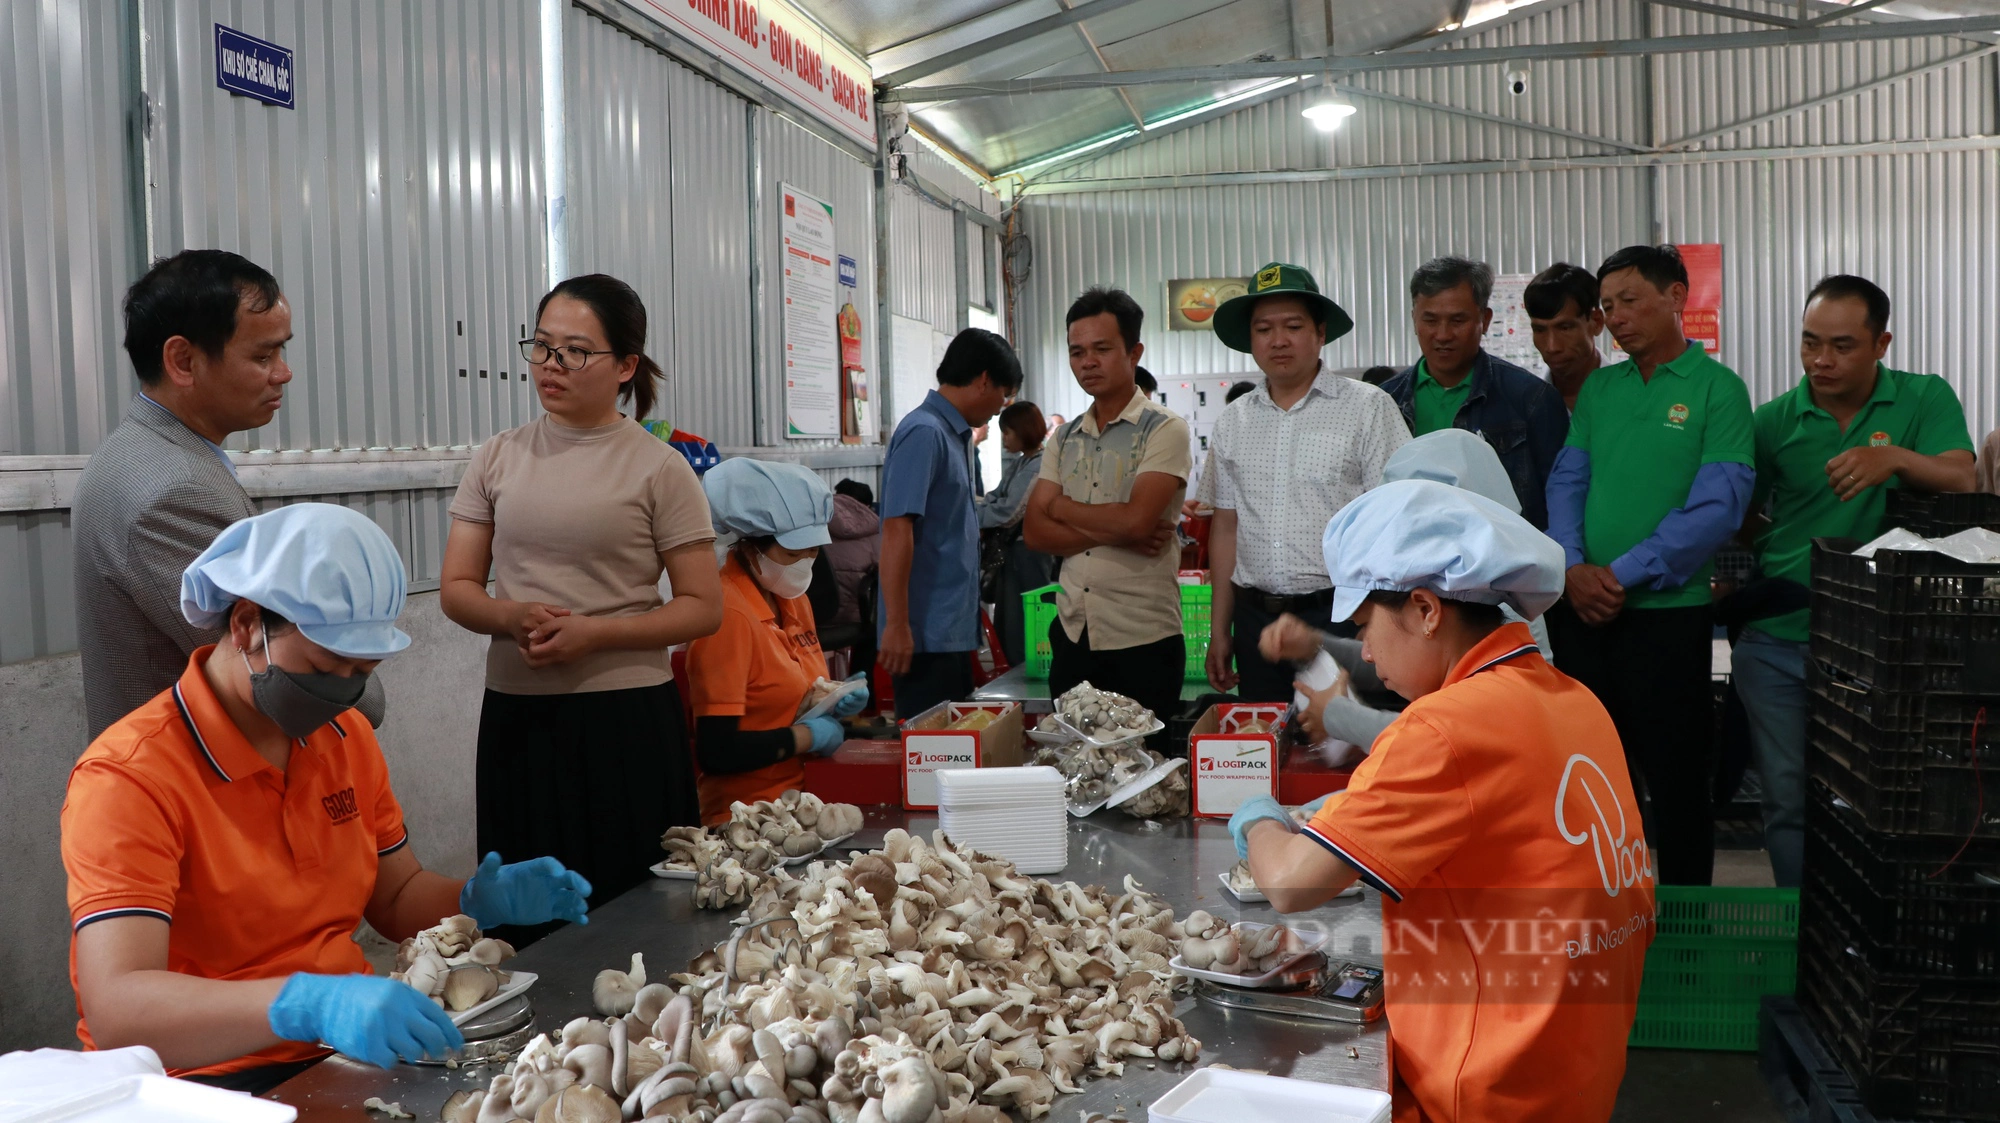 Hội ND Lâm Đồng đưa cán bộ, hội viên, nông dân đi thăm mô hình nuôi trùn quế, thu hơn 30 triệu/tháng- Ảnh 3.